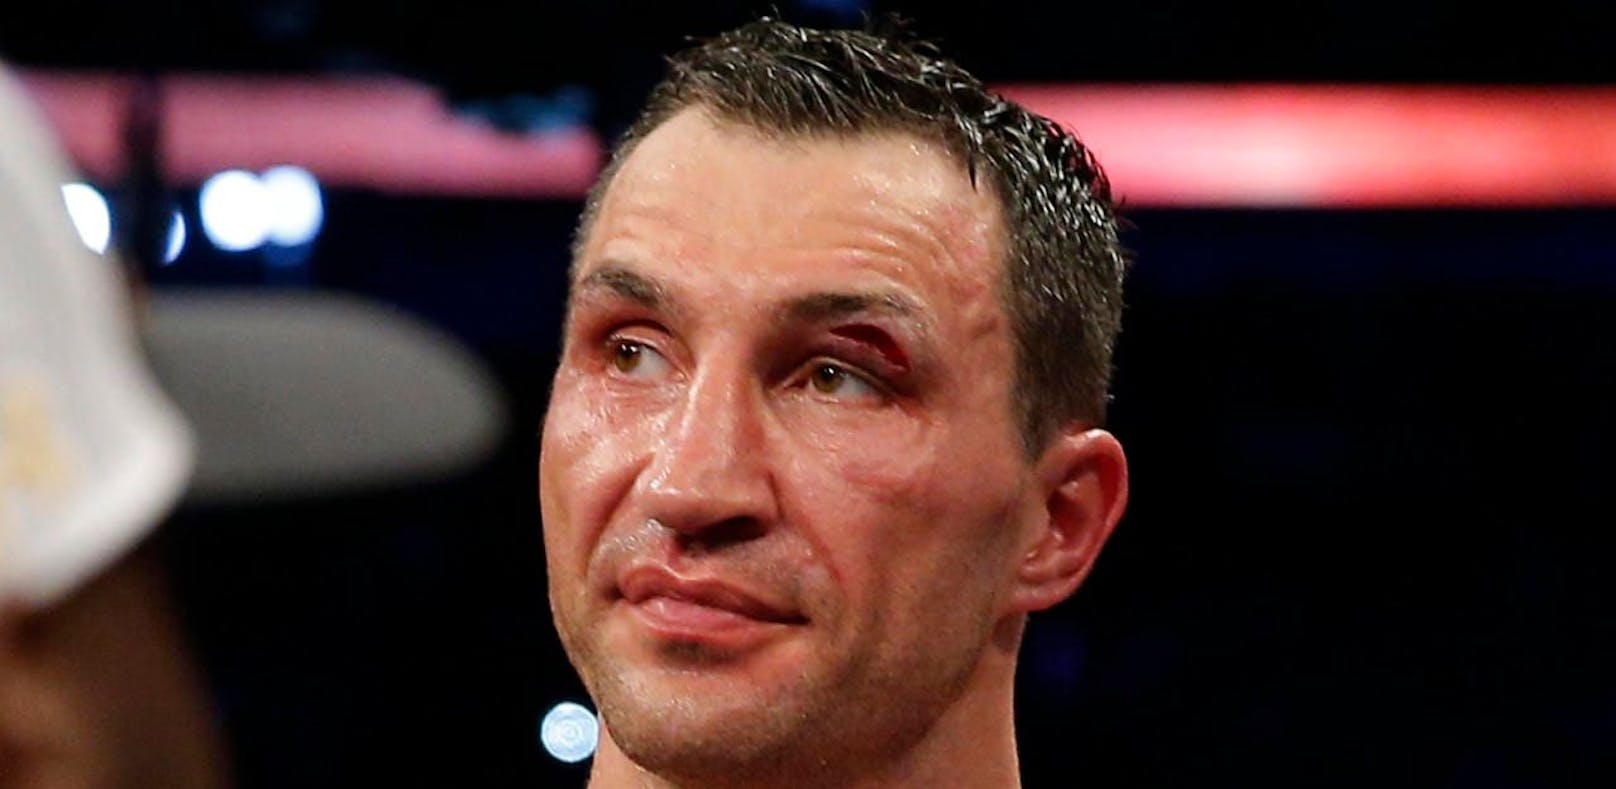 Autsch! Joshua verpasste Klitschko ein Mega-Cut am linken Augen-Lid. 